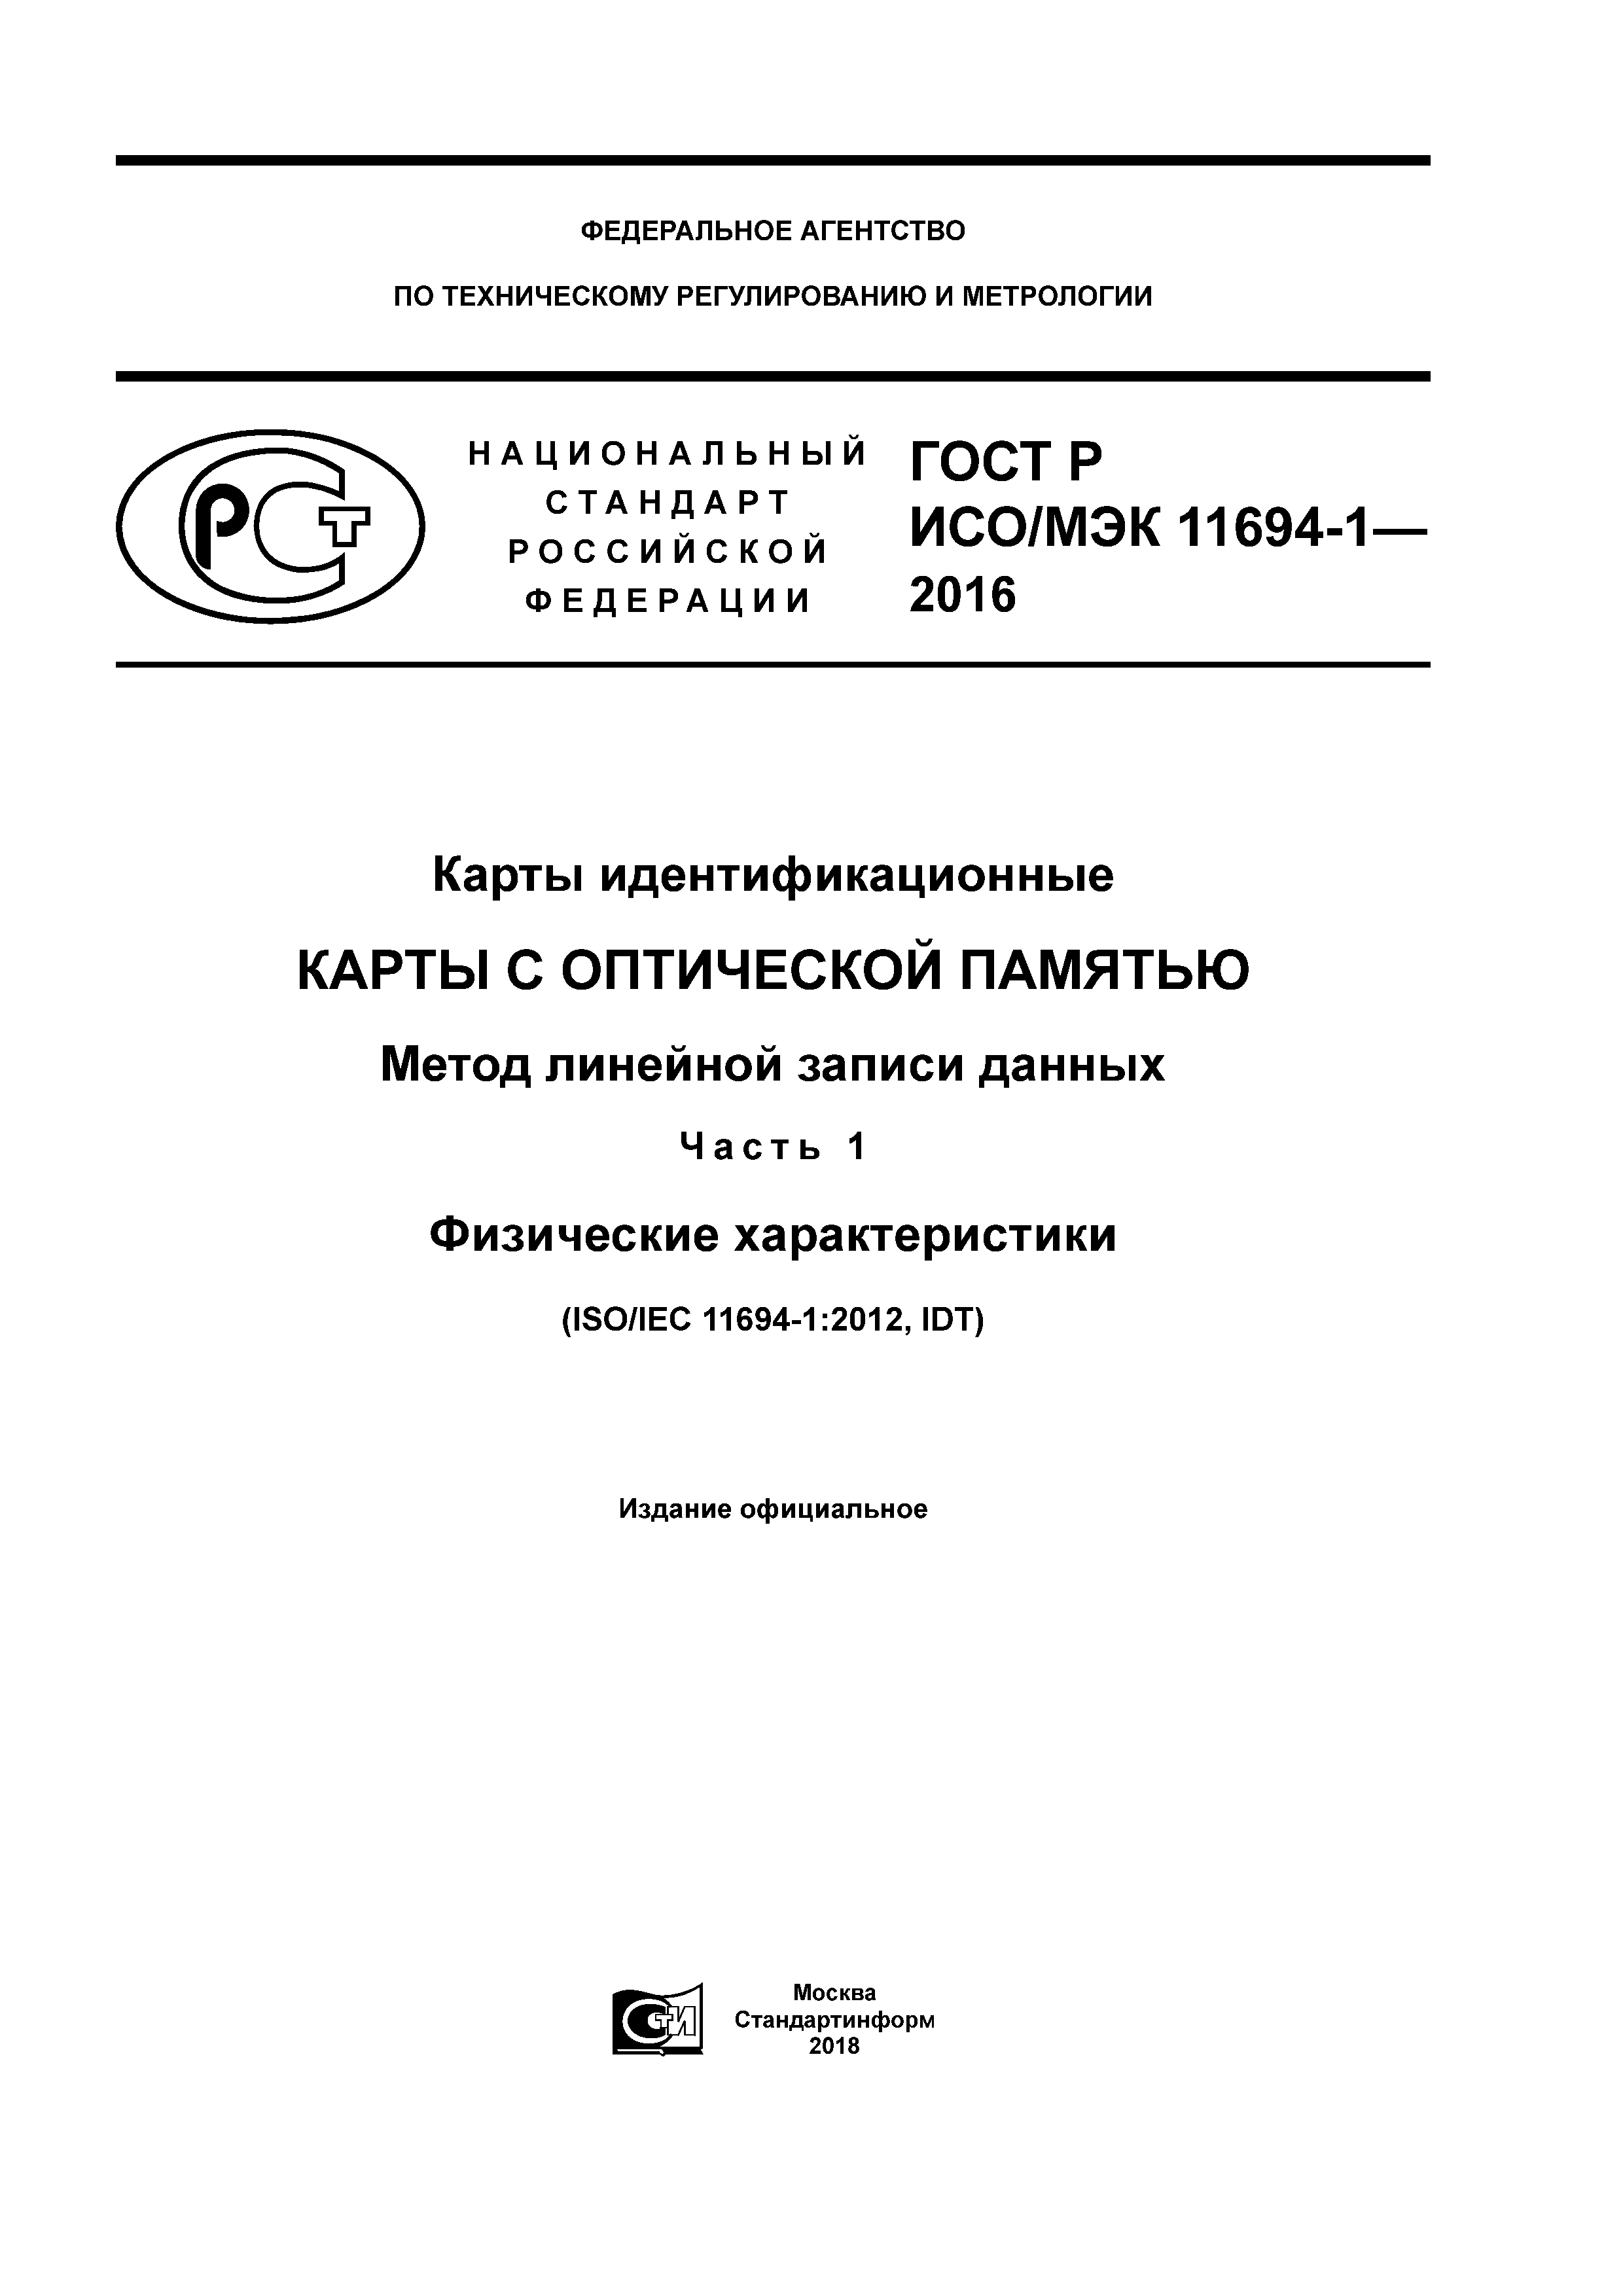 ГОСТ Р ИСО/МЭК 11694-1-2016